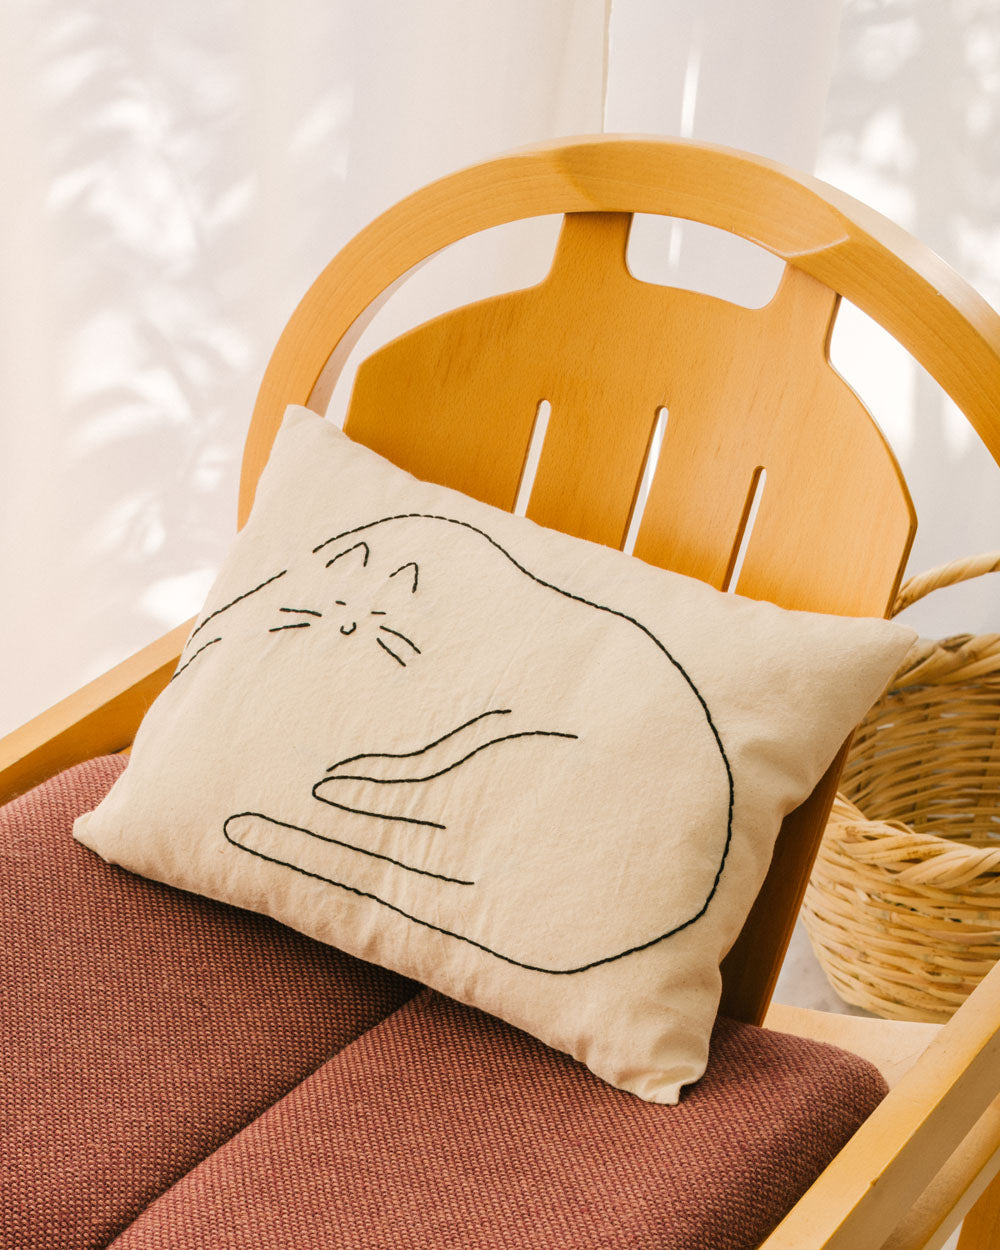 Cushions - Luxury Chair Cushions